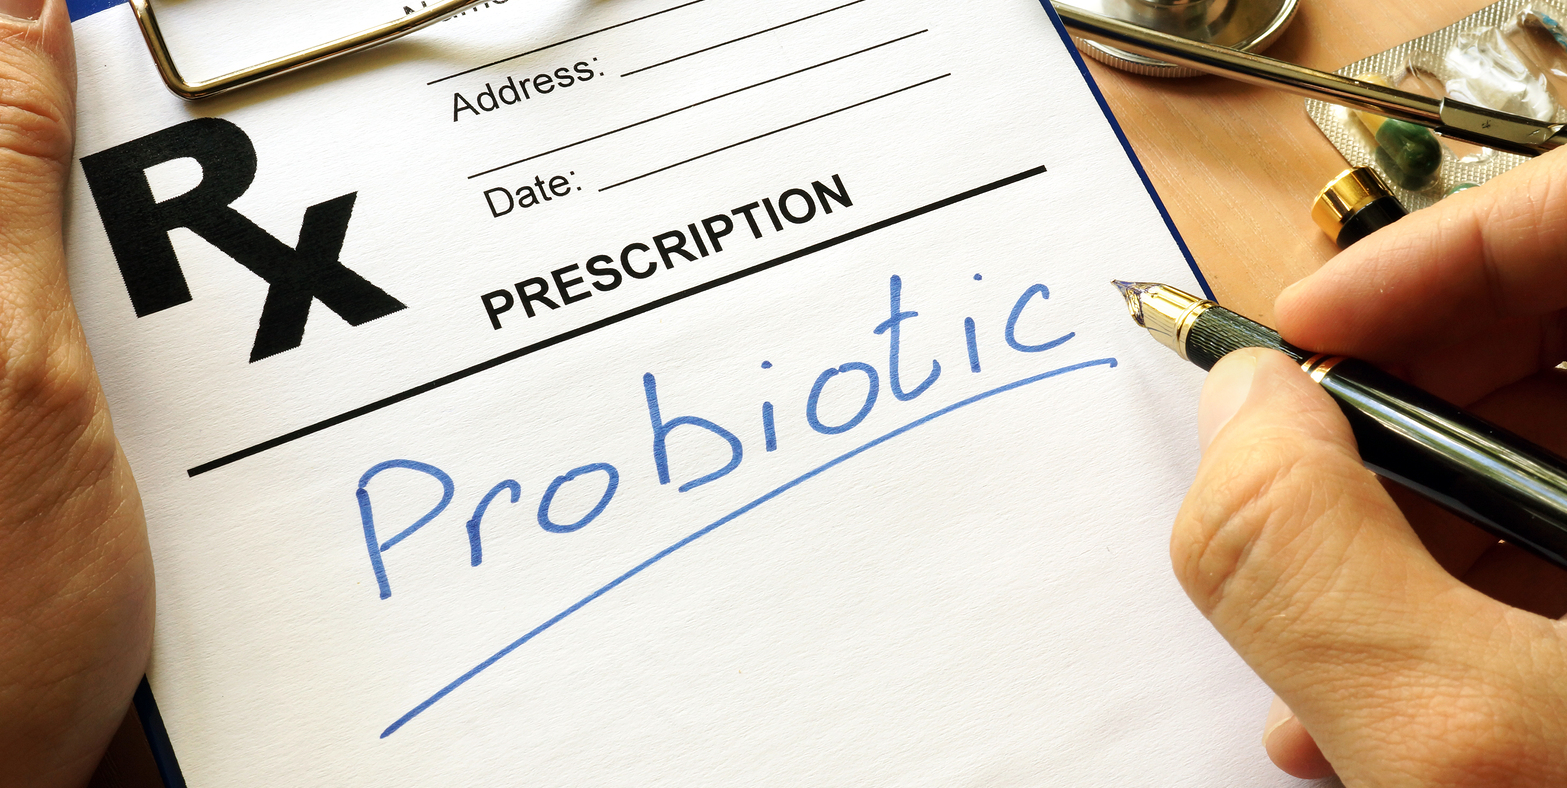 Rossz emésztés ellen szedjünk probiotikumot